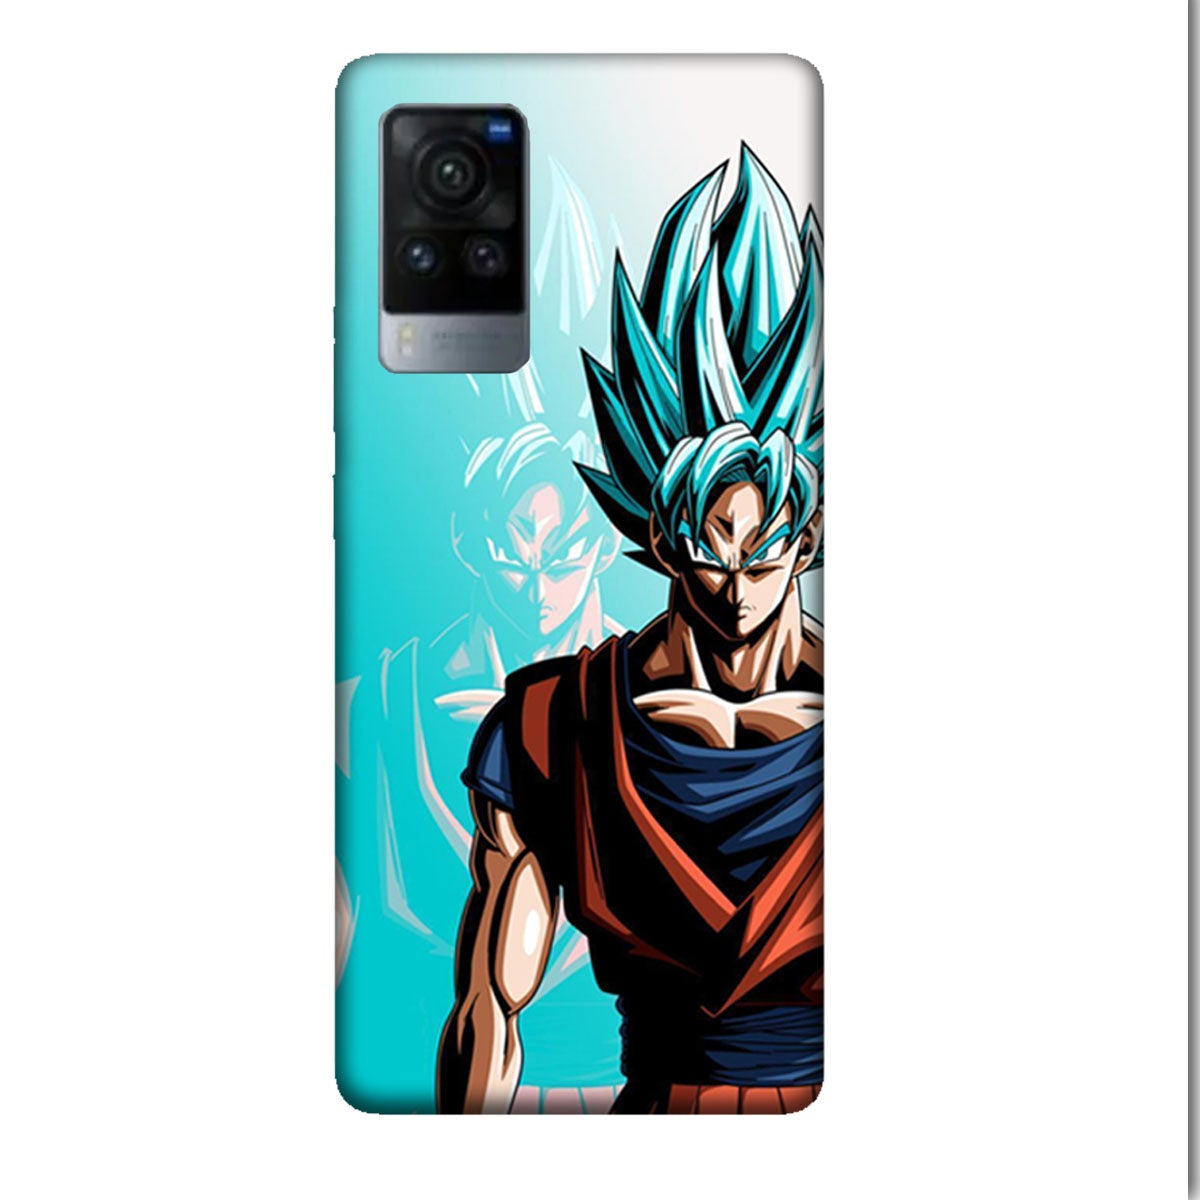 Goku Dragon Ball Z - Mobile Phone Cover - Hard Case - Vivo